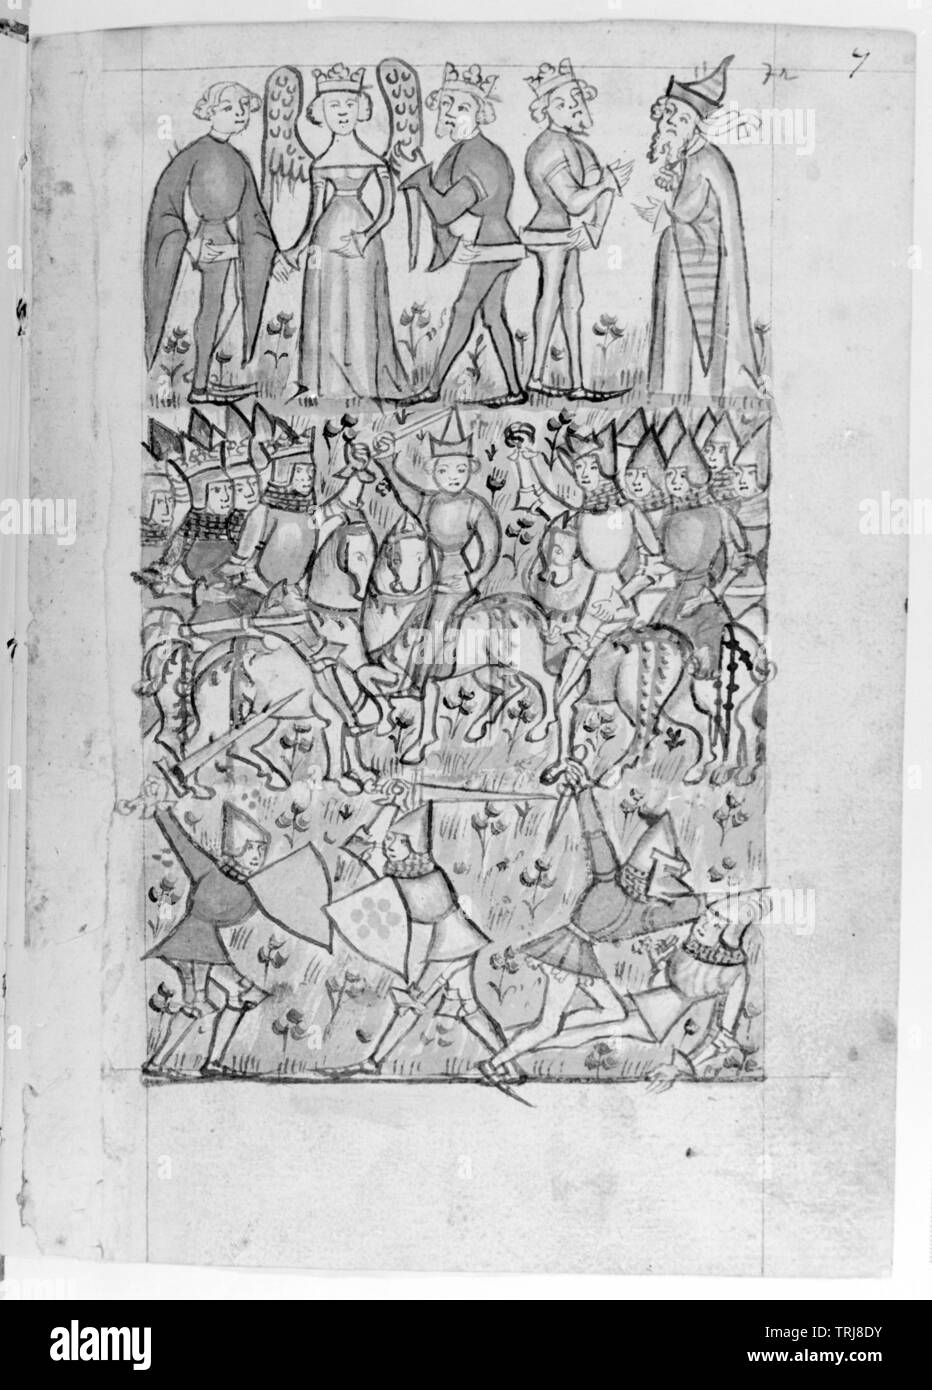 Le codex 2915, folio 7, pleine page de dessin plume : 'Streit um Paris', basé sur le négatif repro de dessin, stylo-Additional-Rights Clearance-Info-Not-Available Banque D'Images